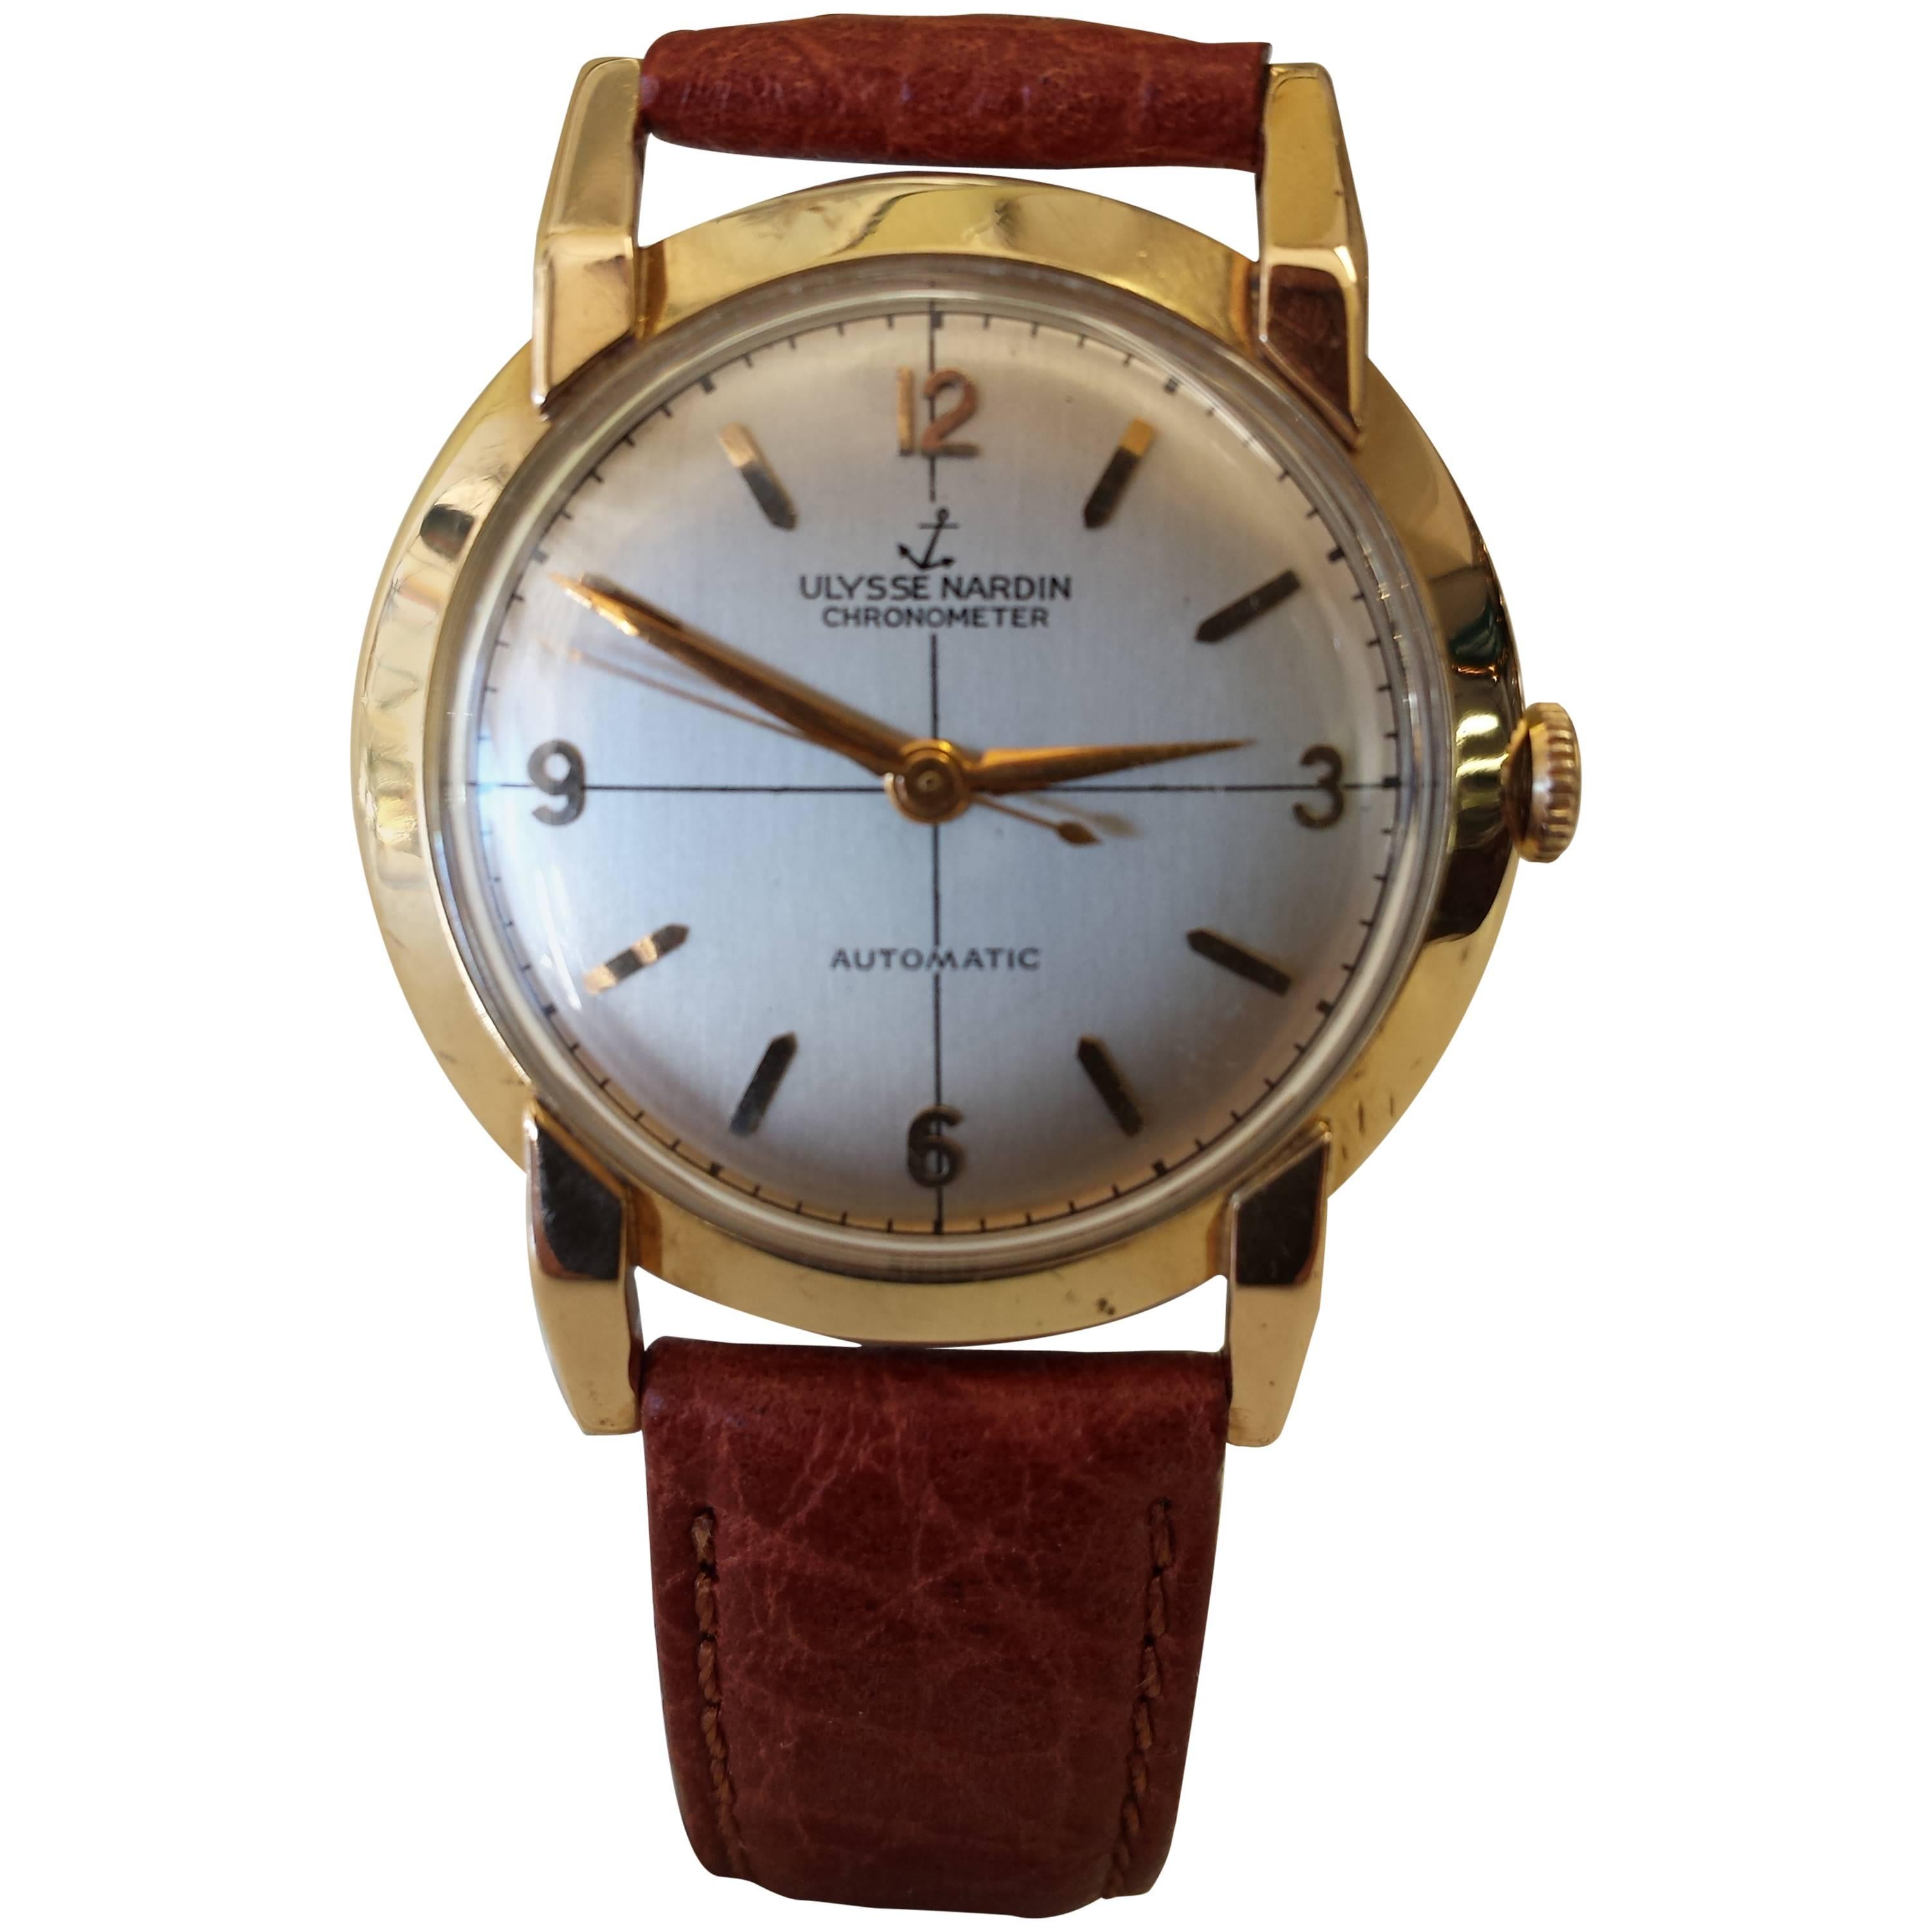 Ulysse Nardin Chronometer Automatic Men's Wristwatch 14K Gold